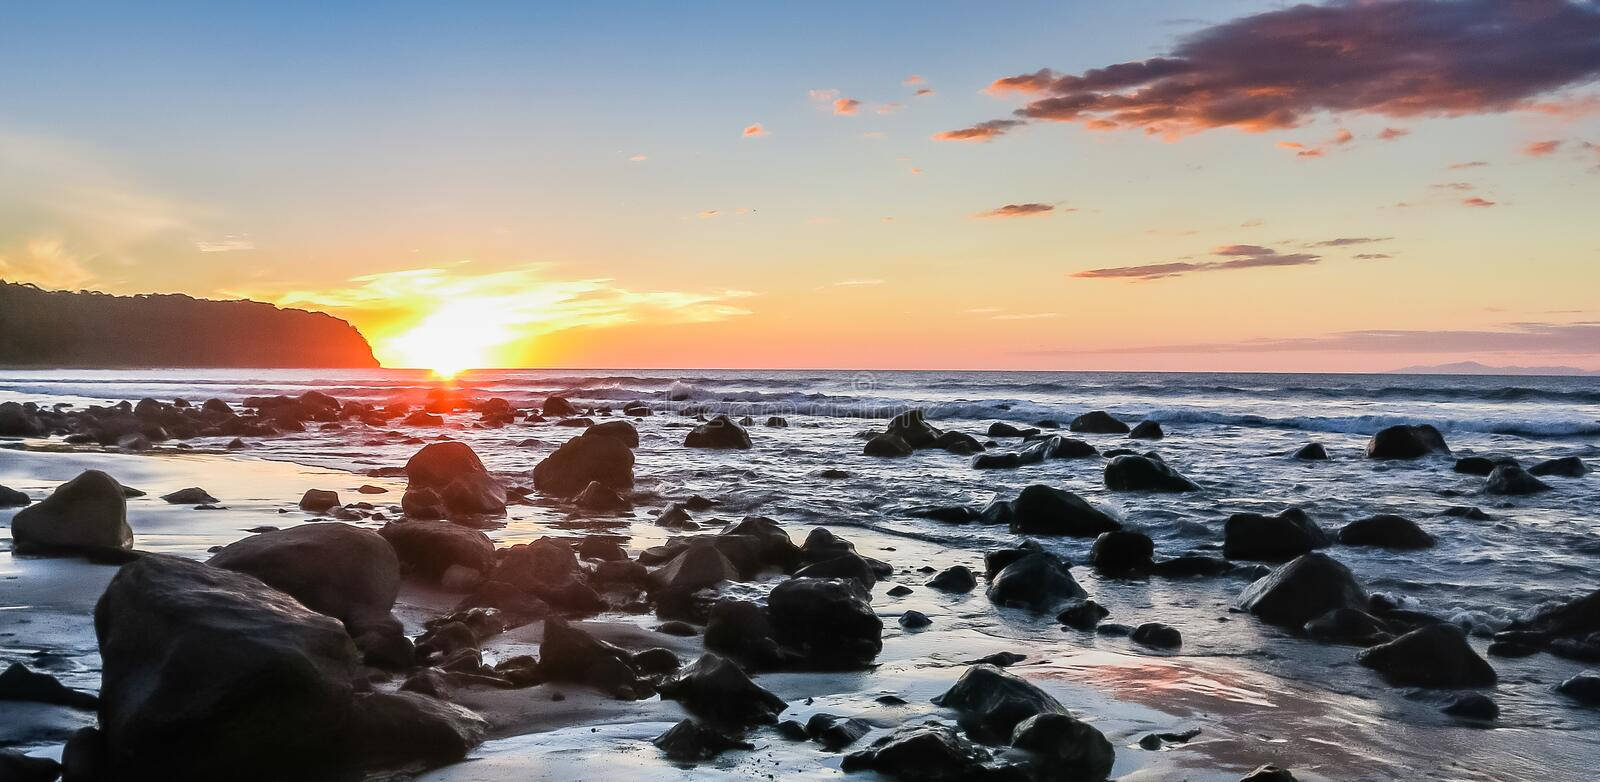 En strand med klipper og en solnedgang Wallpaper